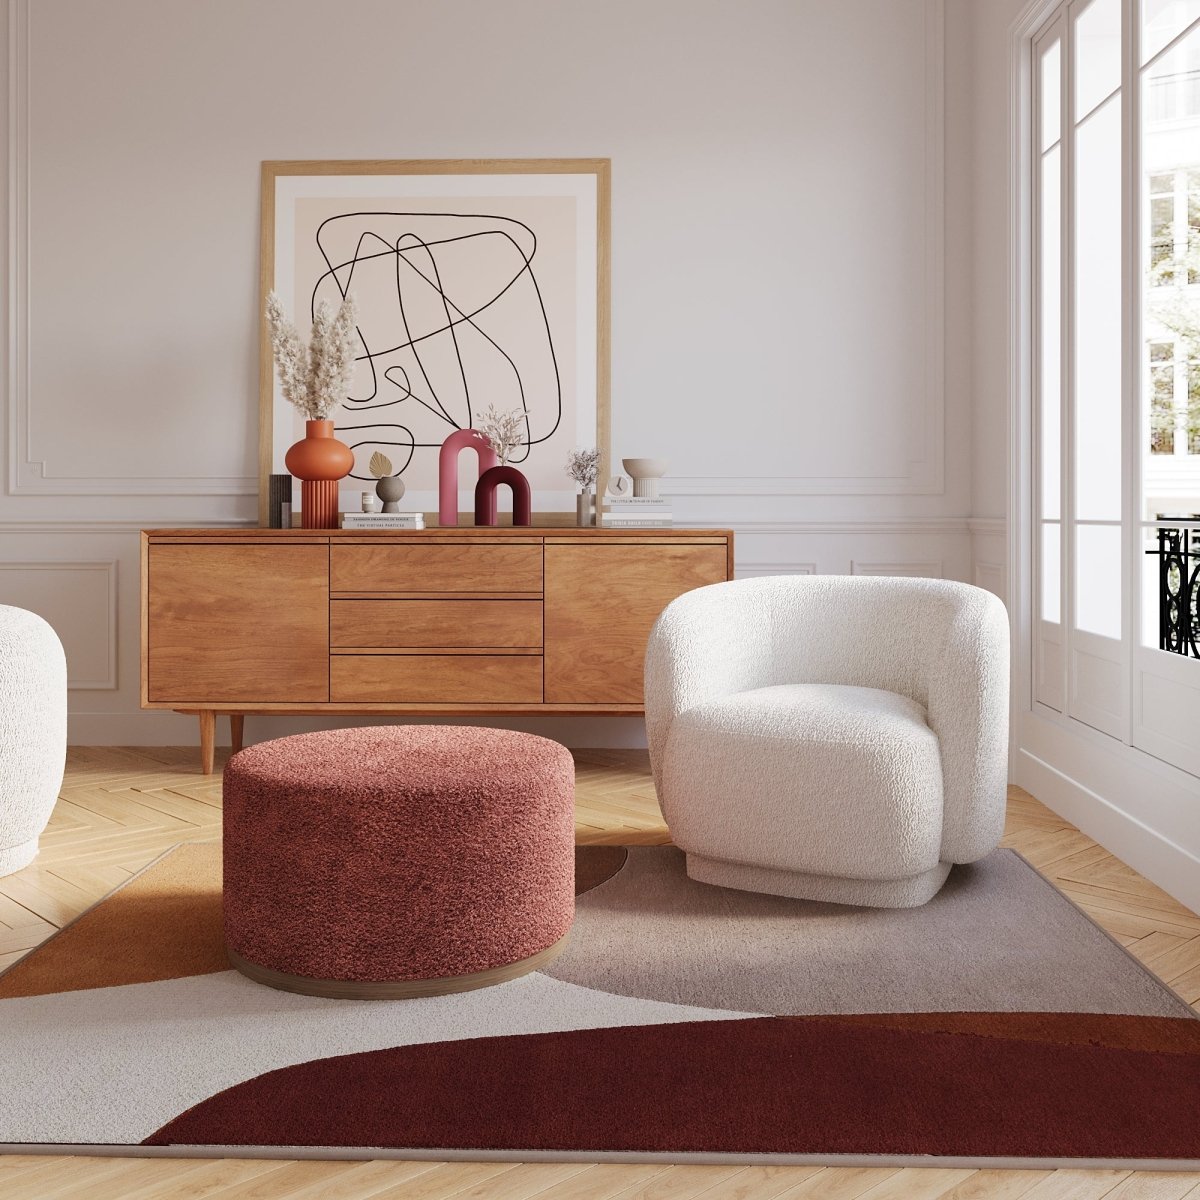 Fauteuil de salon vintage en laine bouclée blanche - Potiron Paris, la satisfaction du fauteuil design et confortable pas cher